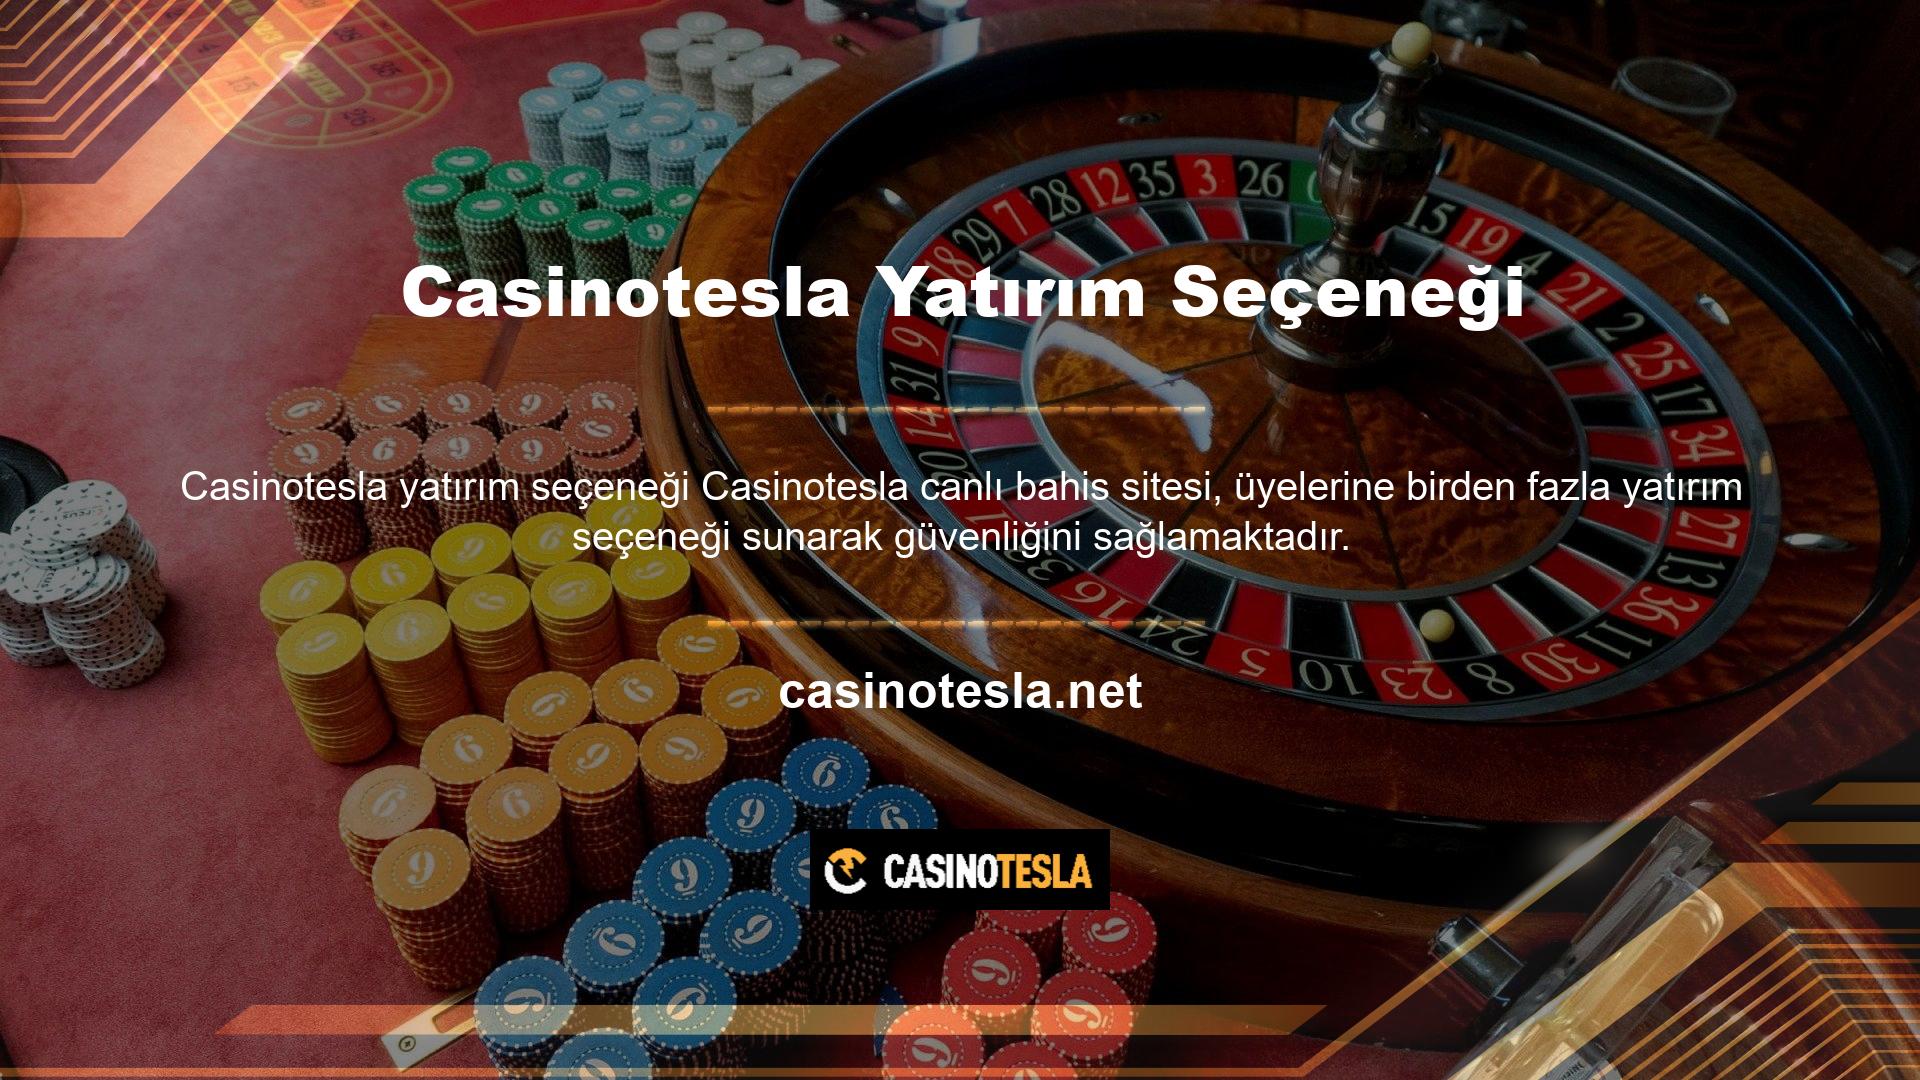 Kullanıcılar yeni Casinotesla giriş adresinden farklı yöntemler kullanarak hesaplarına para ekleyebiliyor, bu da bakiyelerini artırmalarını ve bahis yapmalarını kolaylaştırıyorÜyelerimizin refahını sağlamak için Casinotesla canlı bahis sitesi zaman zaman belirli prosedürleri değiştirecek ve olumsuz sonuçlardan kaçınmak için çaba göstereceğiz